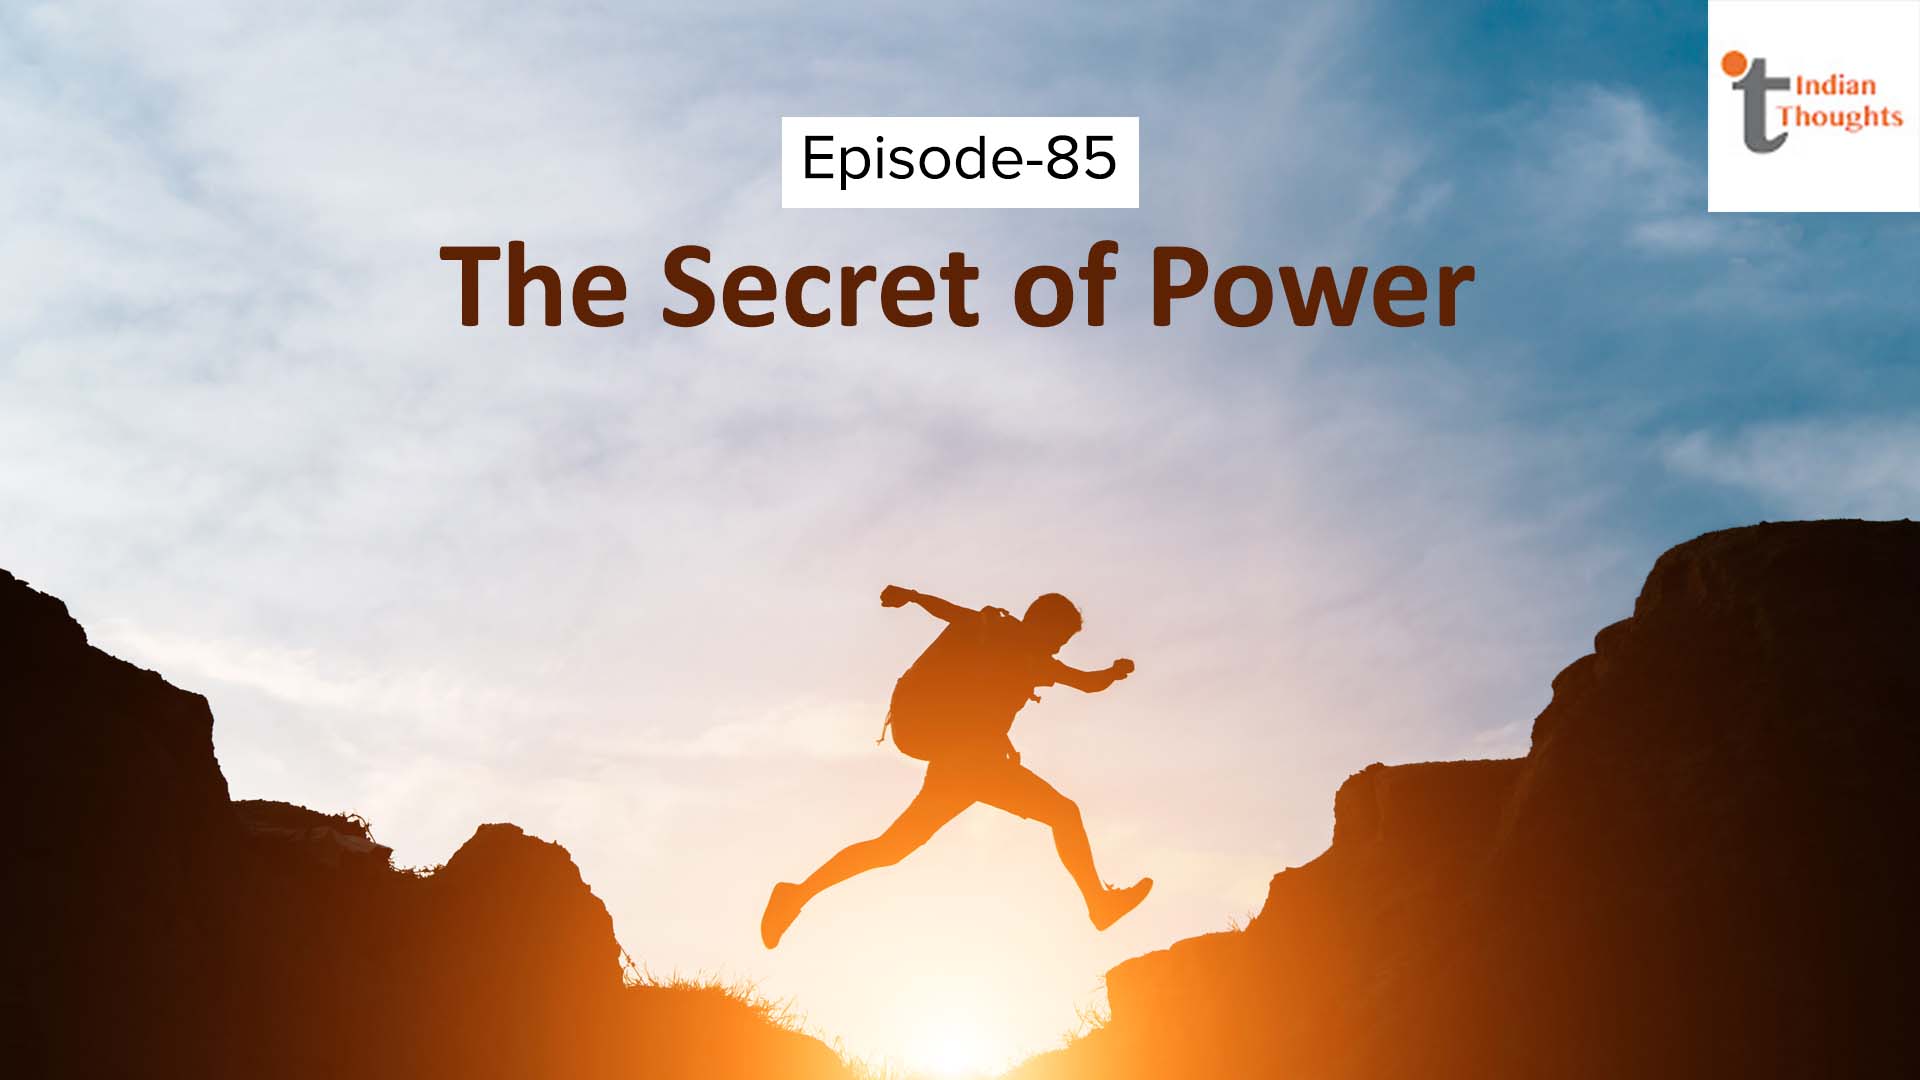 The secret of power